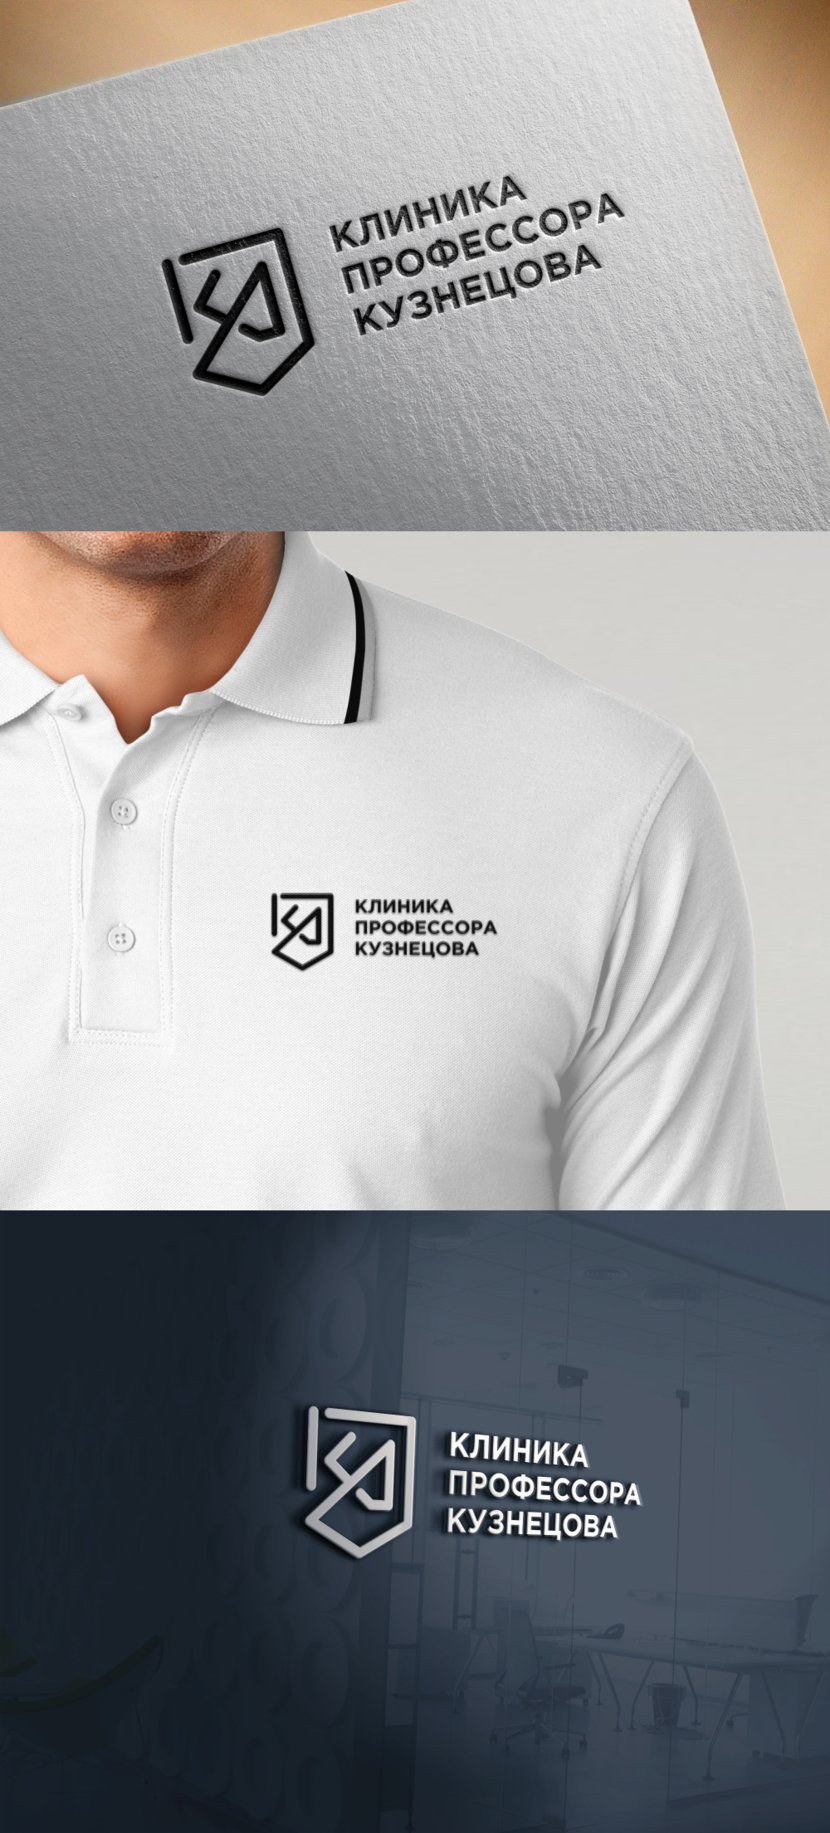 1 - Разработка логотипа и фирменного стиля для новой авторской стоматологии "Клиника профессора Кузнецова"